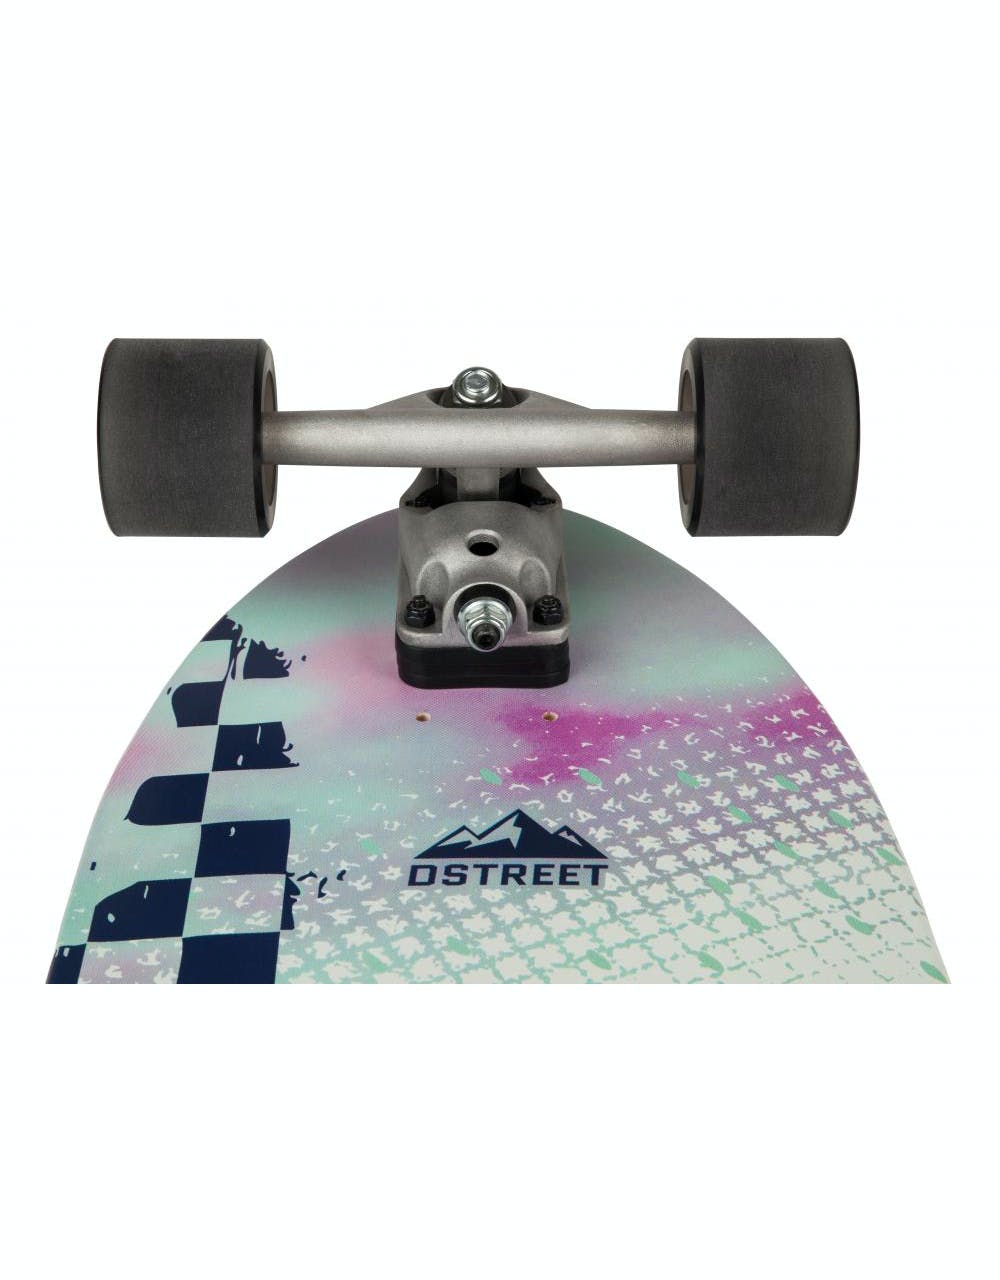 D Street Swell Surfskate Cruiser - 9.75" x 31"